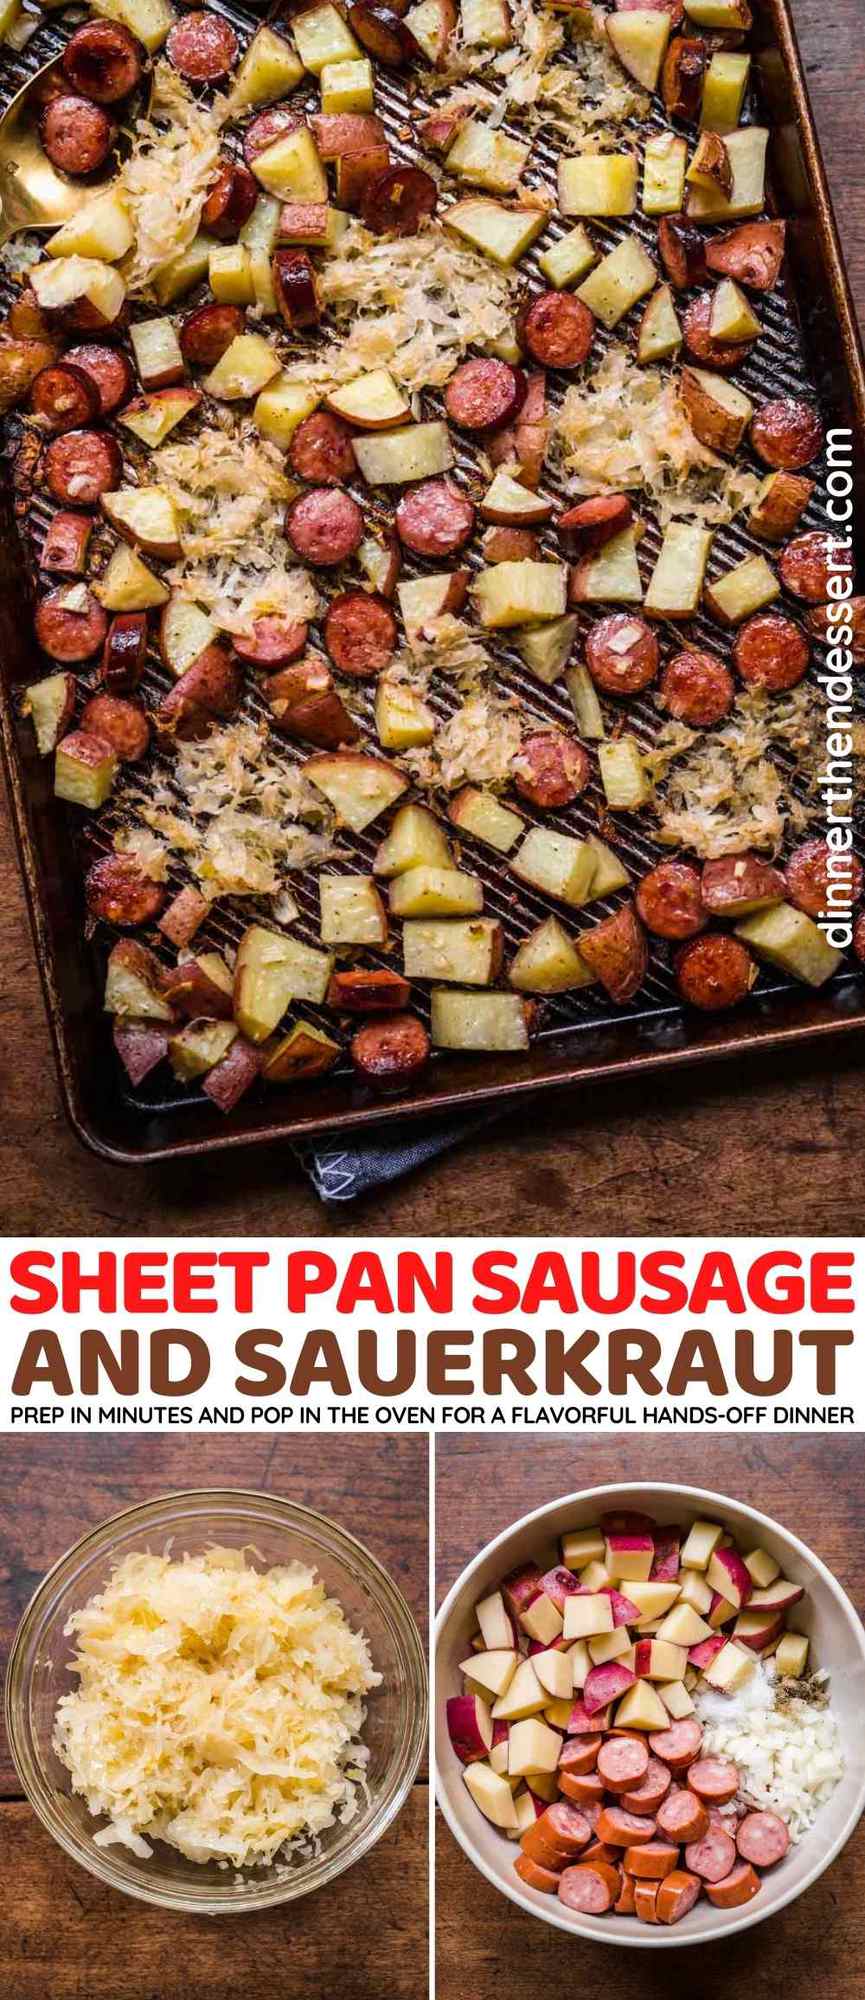 Sheet Pan Sausage and Sauerkraut collage